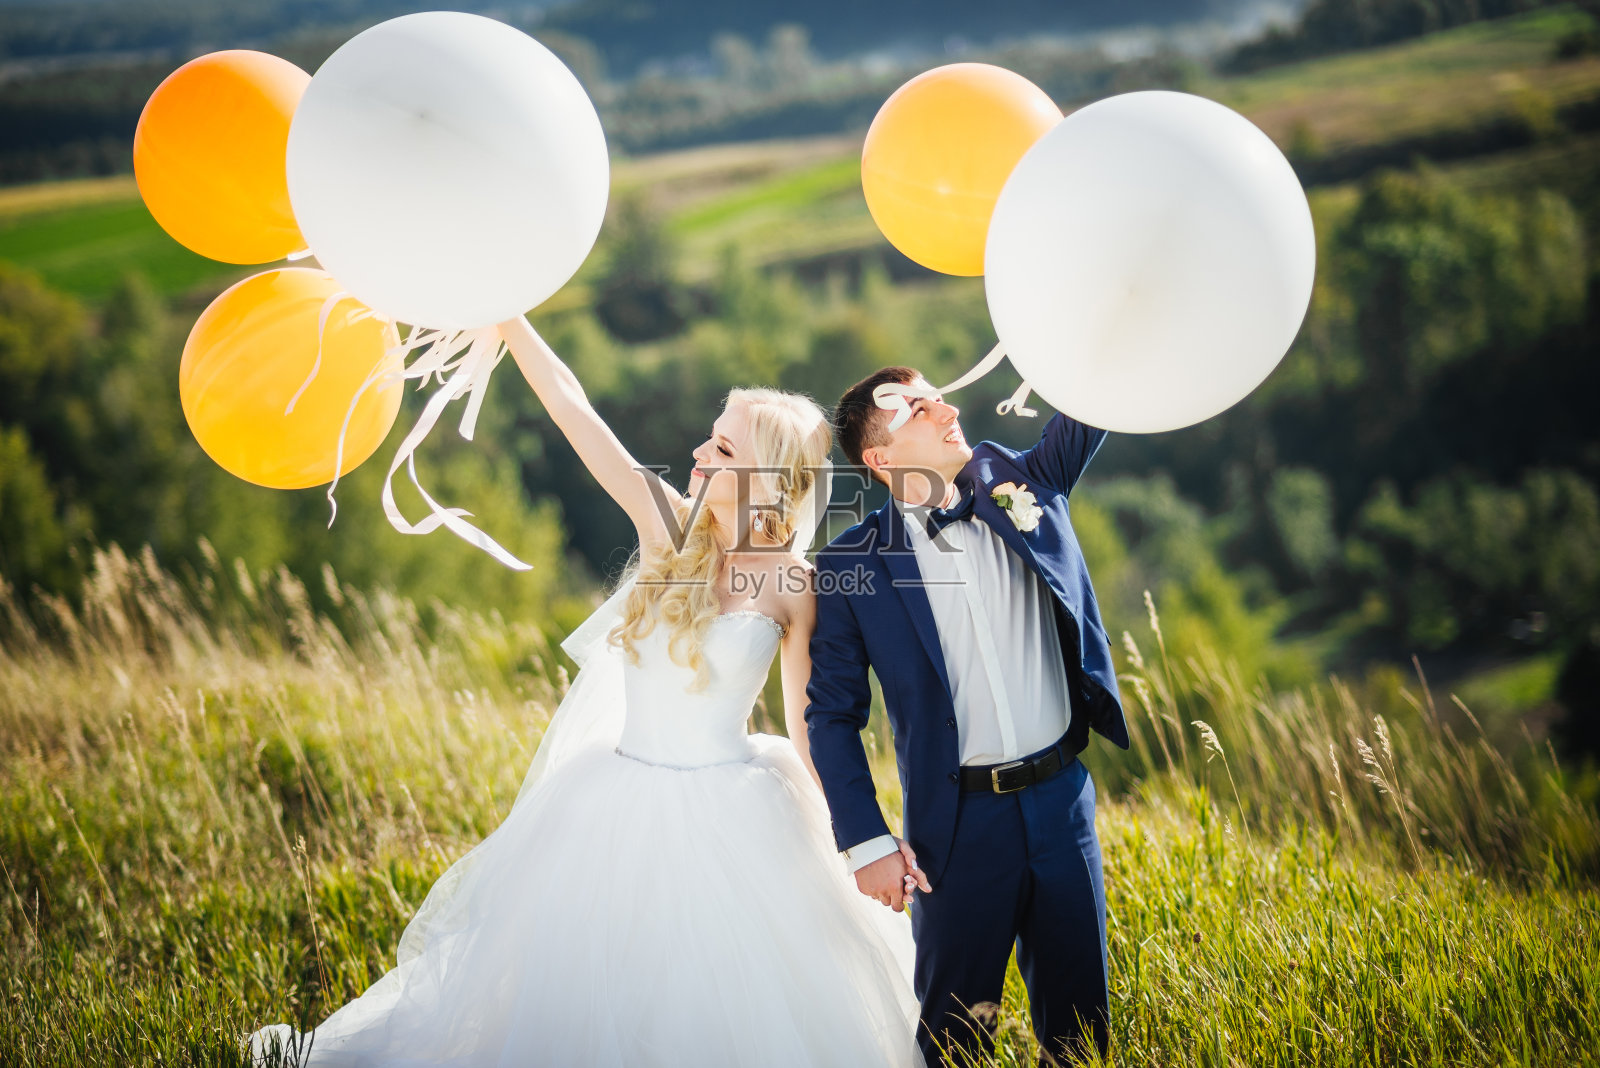 的婚礼。结婚的那一天。喜气洋洋、面带微笑的新婚夫妇在婚礼后拿着氦气球玩。结婚的概念。婚姻照片摄影图片